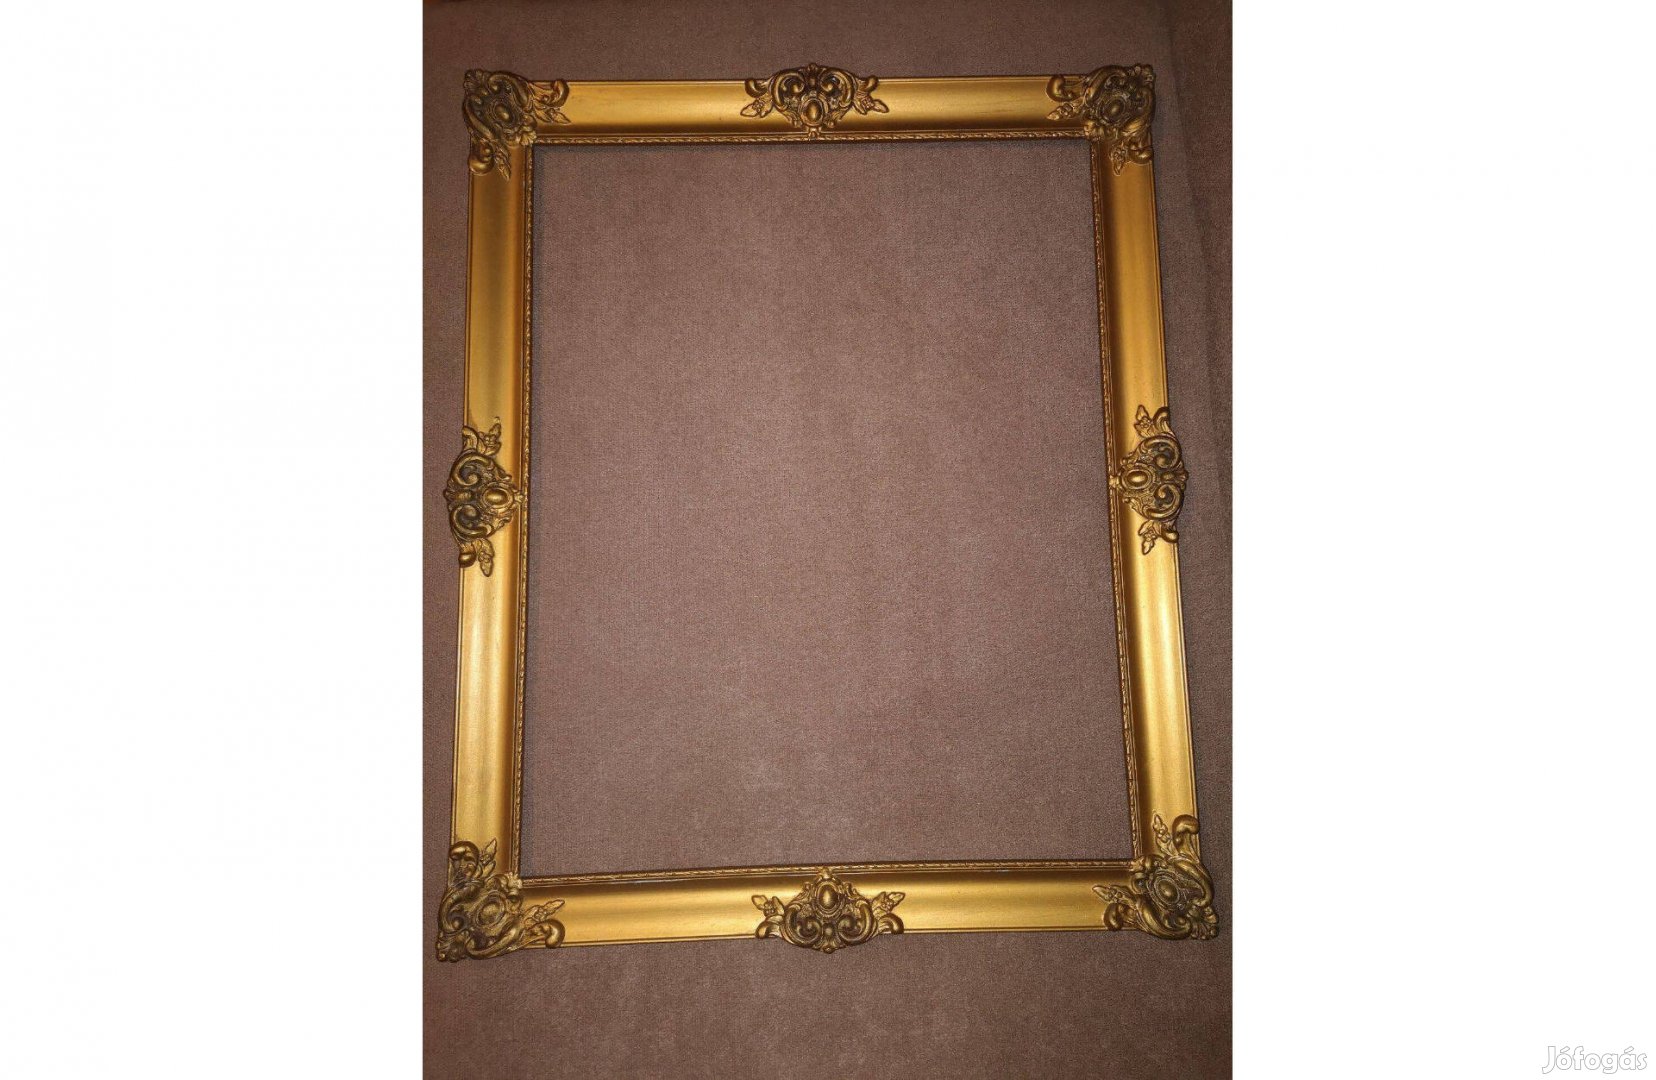 Arany színű Blondel keret üveggel kb 60 éves 57 x 47 cm (49 x 40 cm)